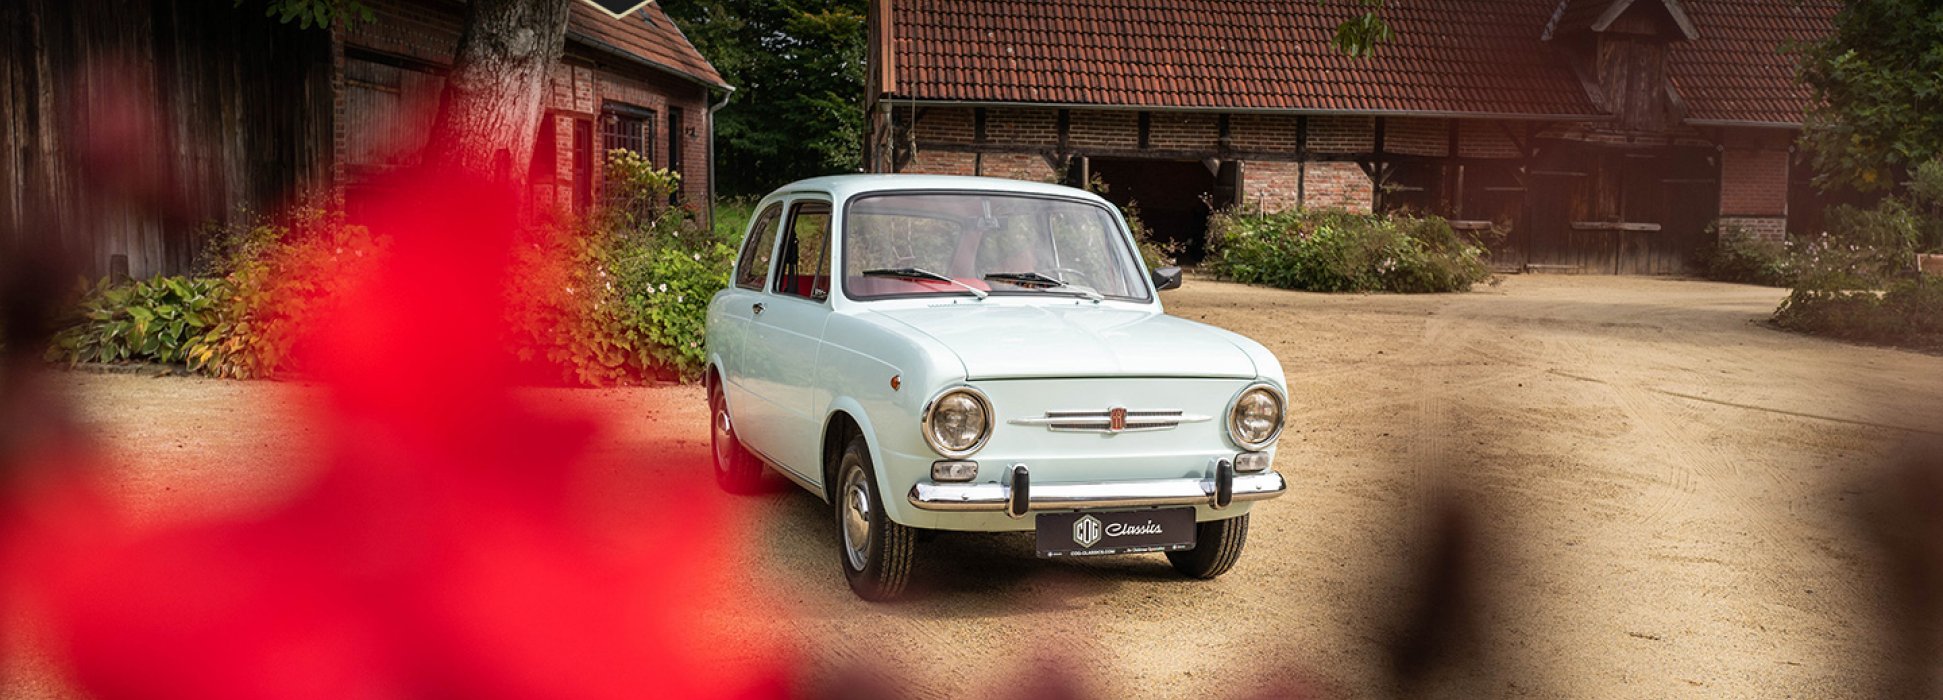 Fiat 850 5